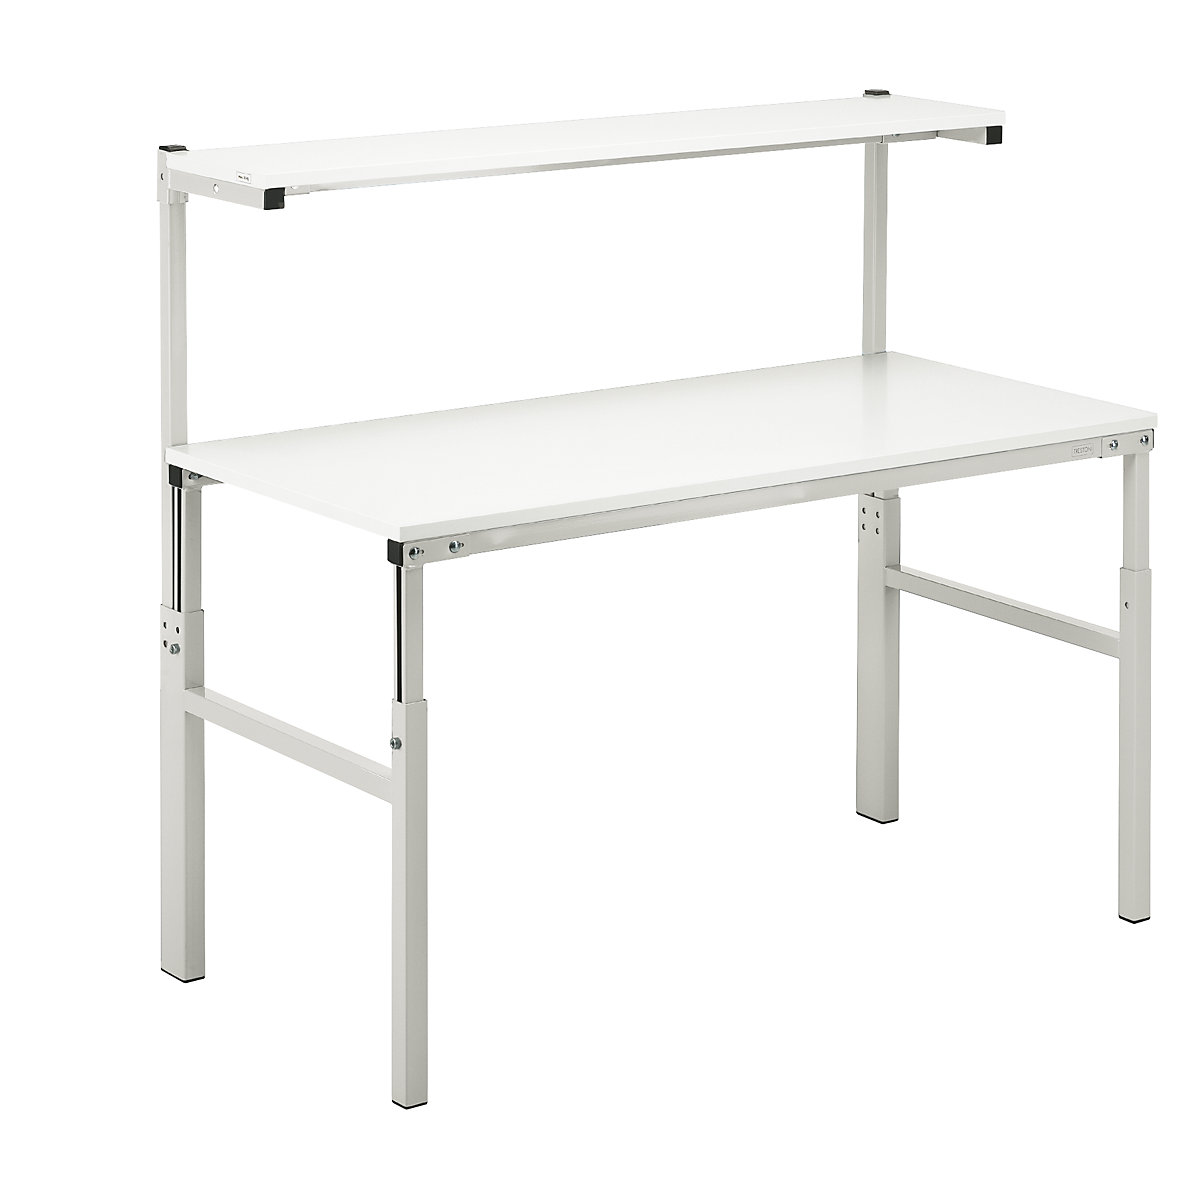 Treston – Pracovní stůl s ručním přestavováním výšky v rozsahu 650 až 900 mm